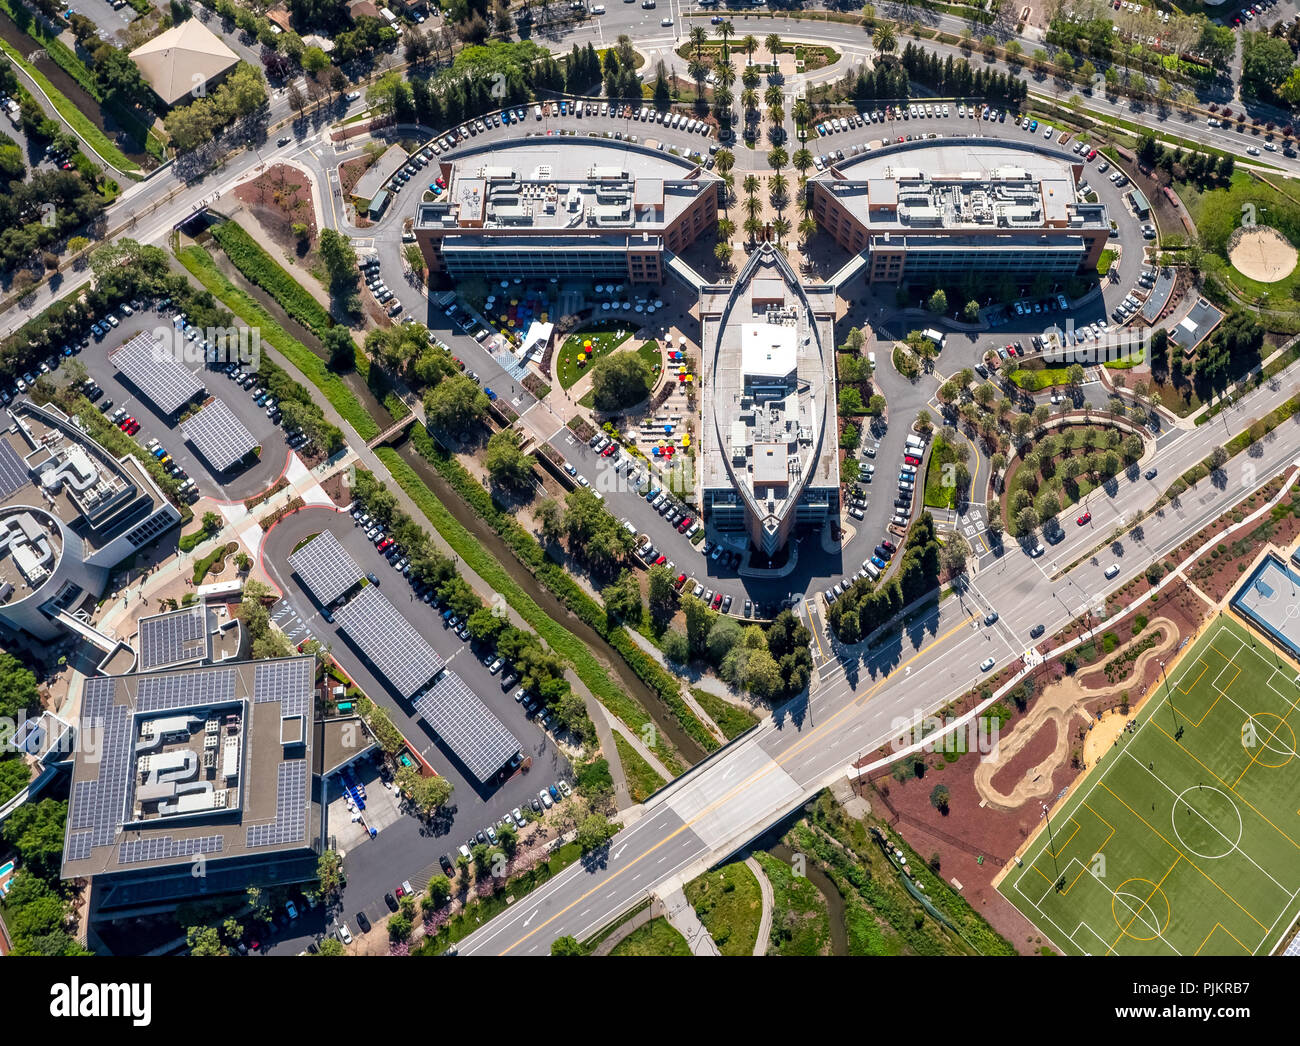 La sede centrale di Google googleplex, Silicon Valley, Valley, California, Stati Uniti, Santa Clara, California, Stati Uniti Foto Stock